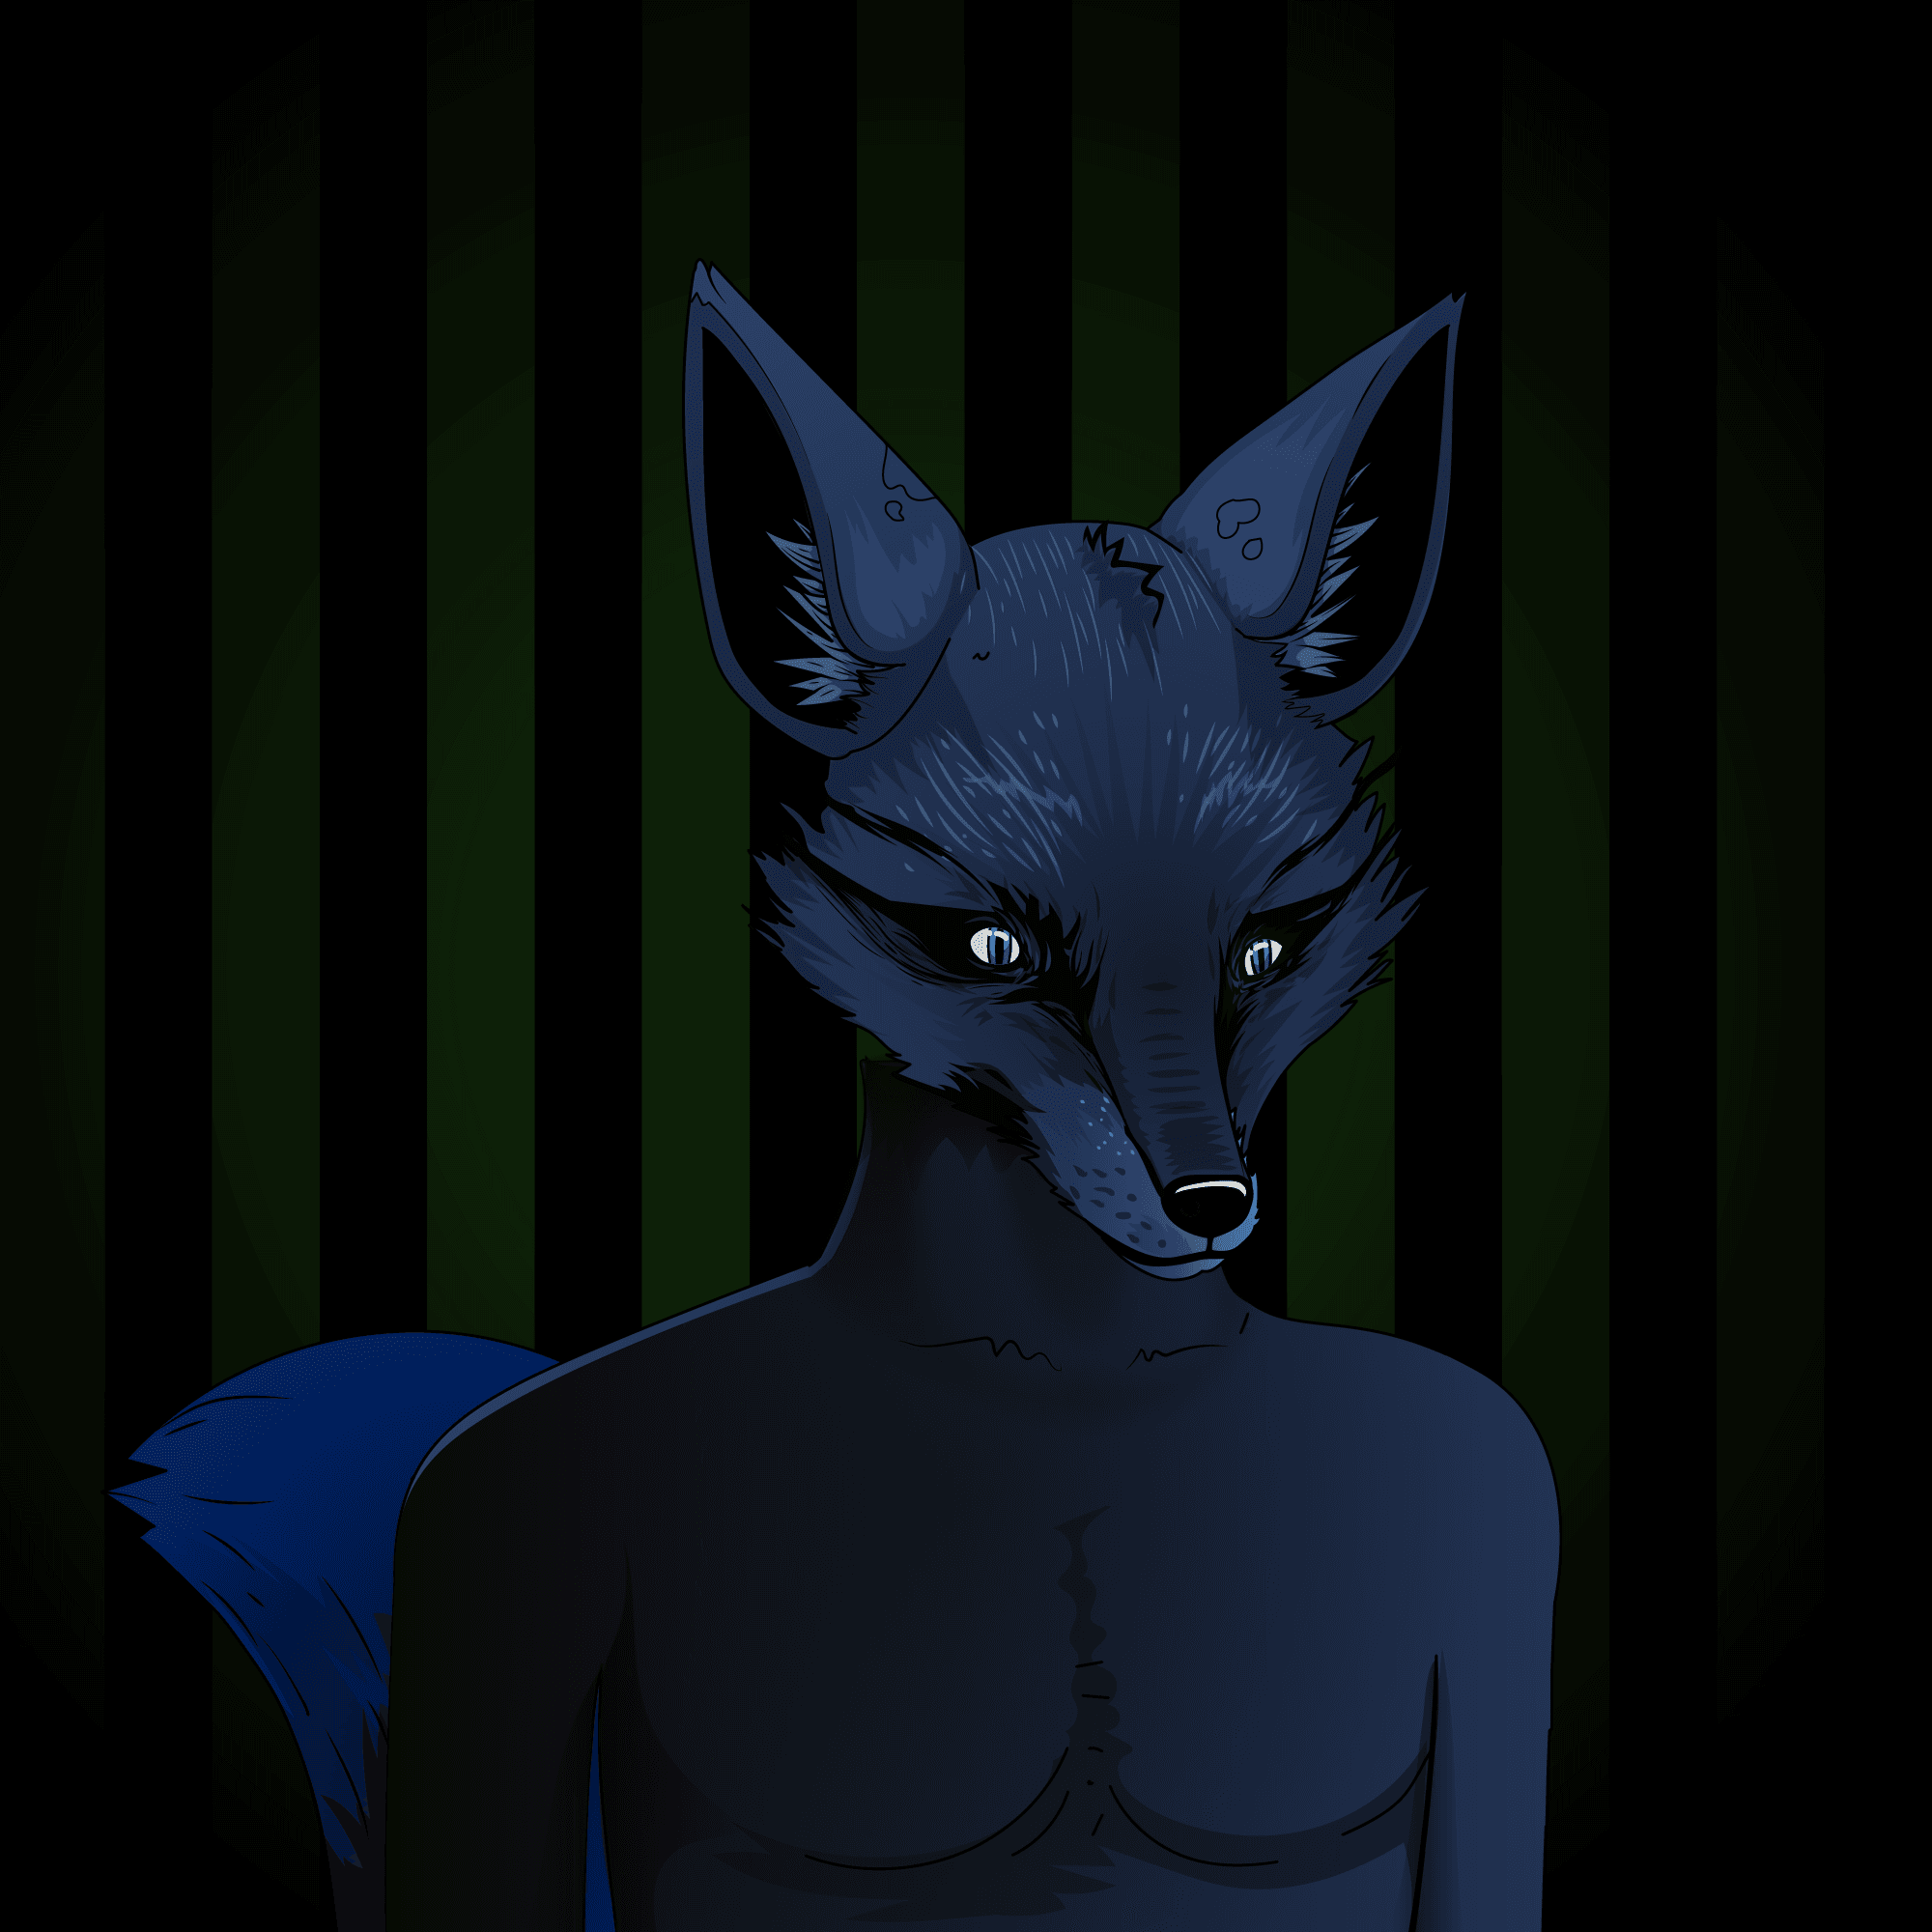 litfornothing.fox